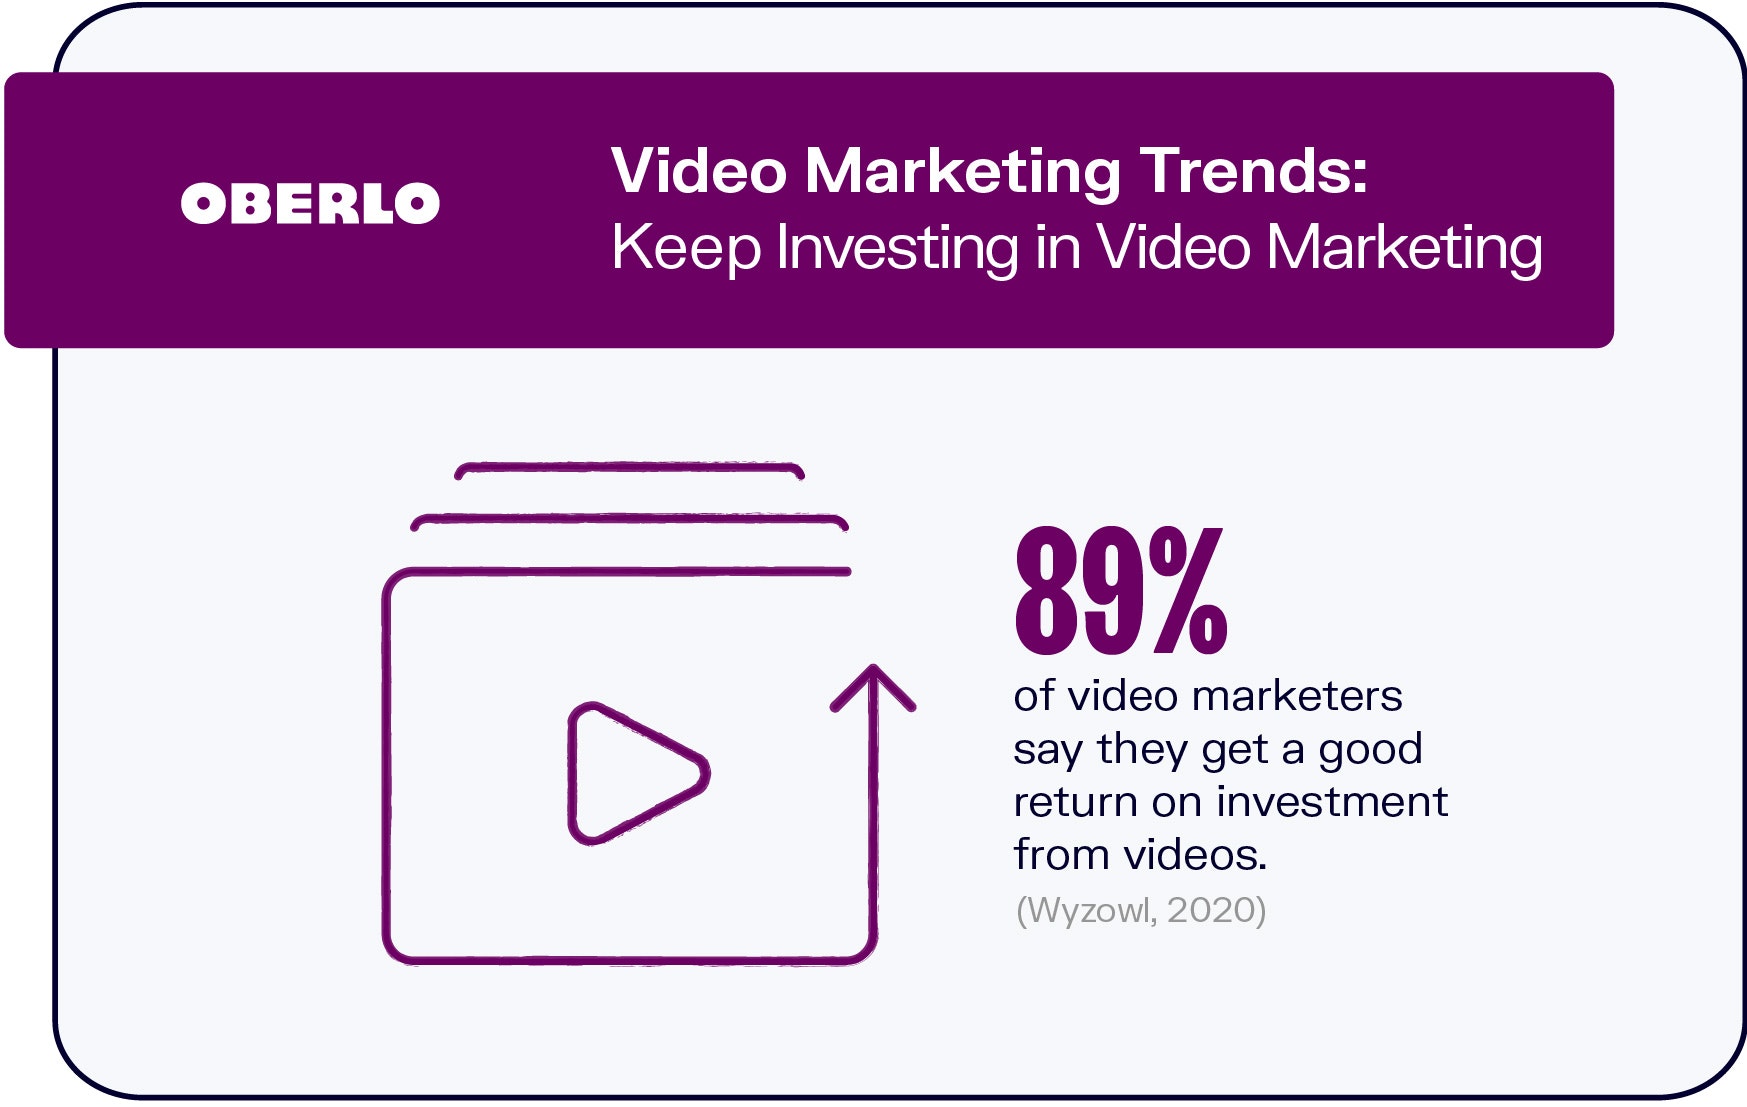 视频营销趋势:持续投资视频营销